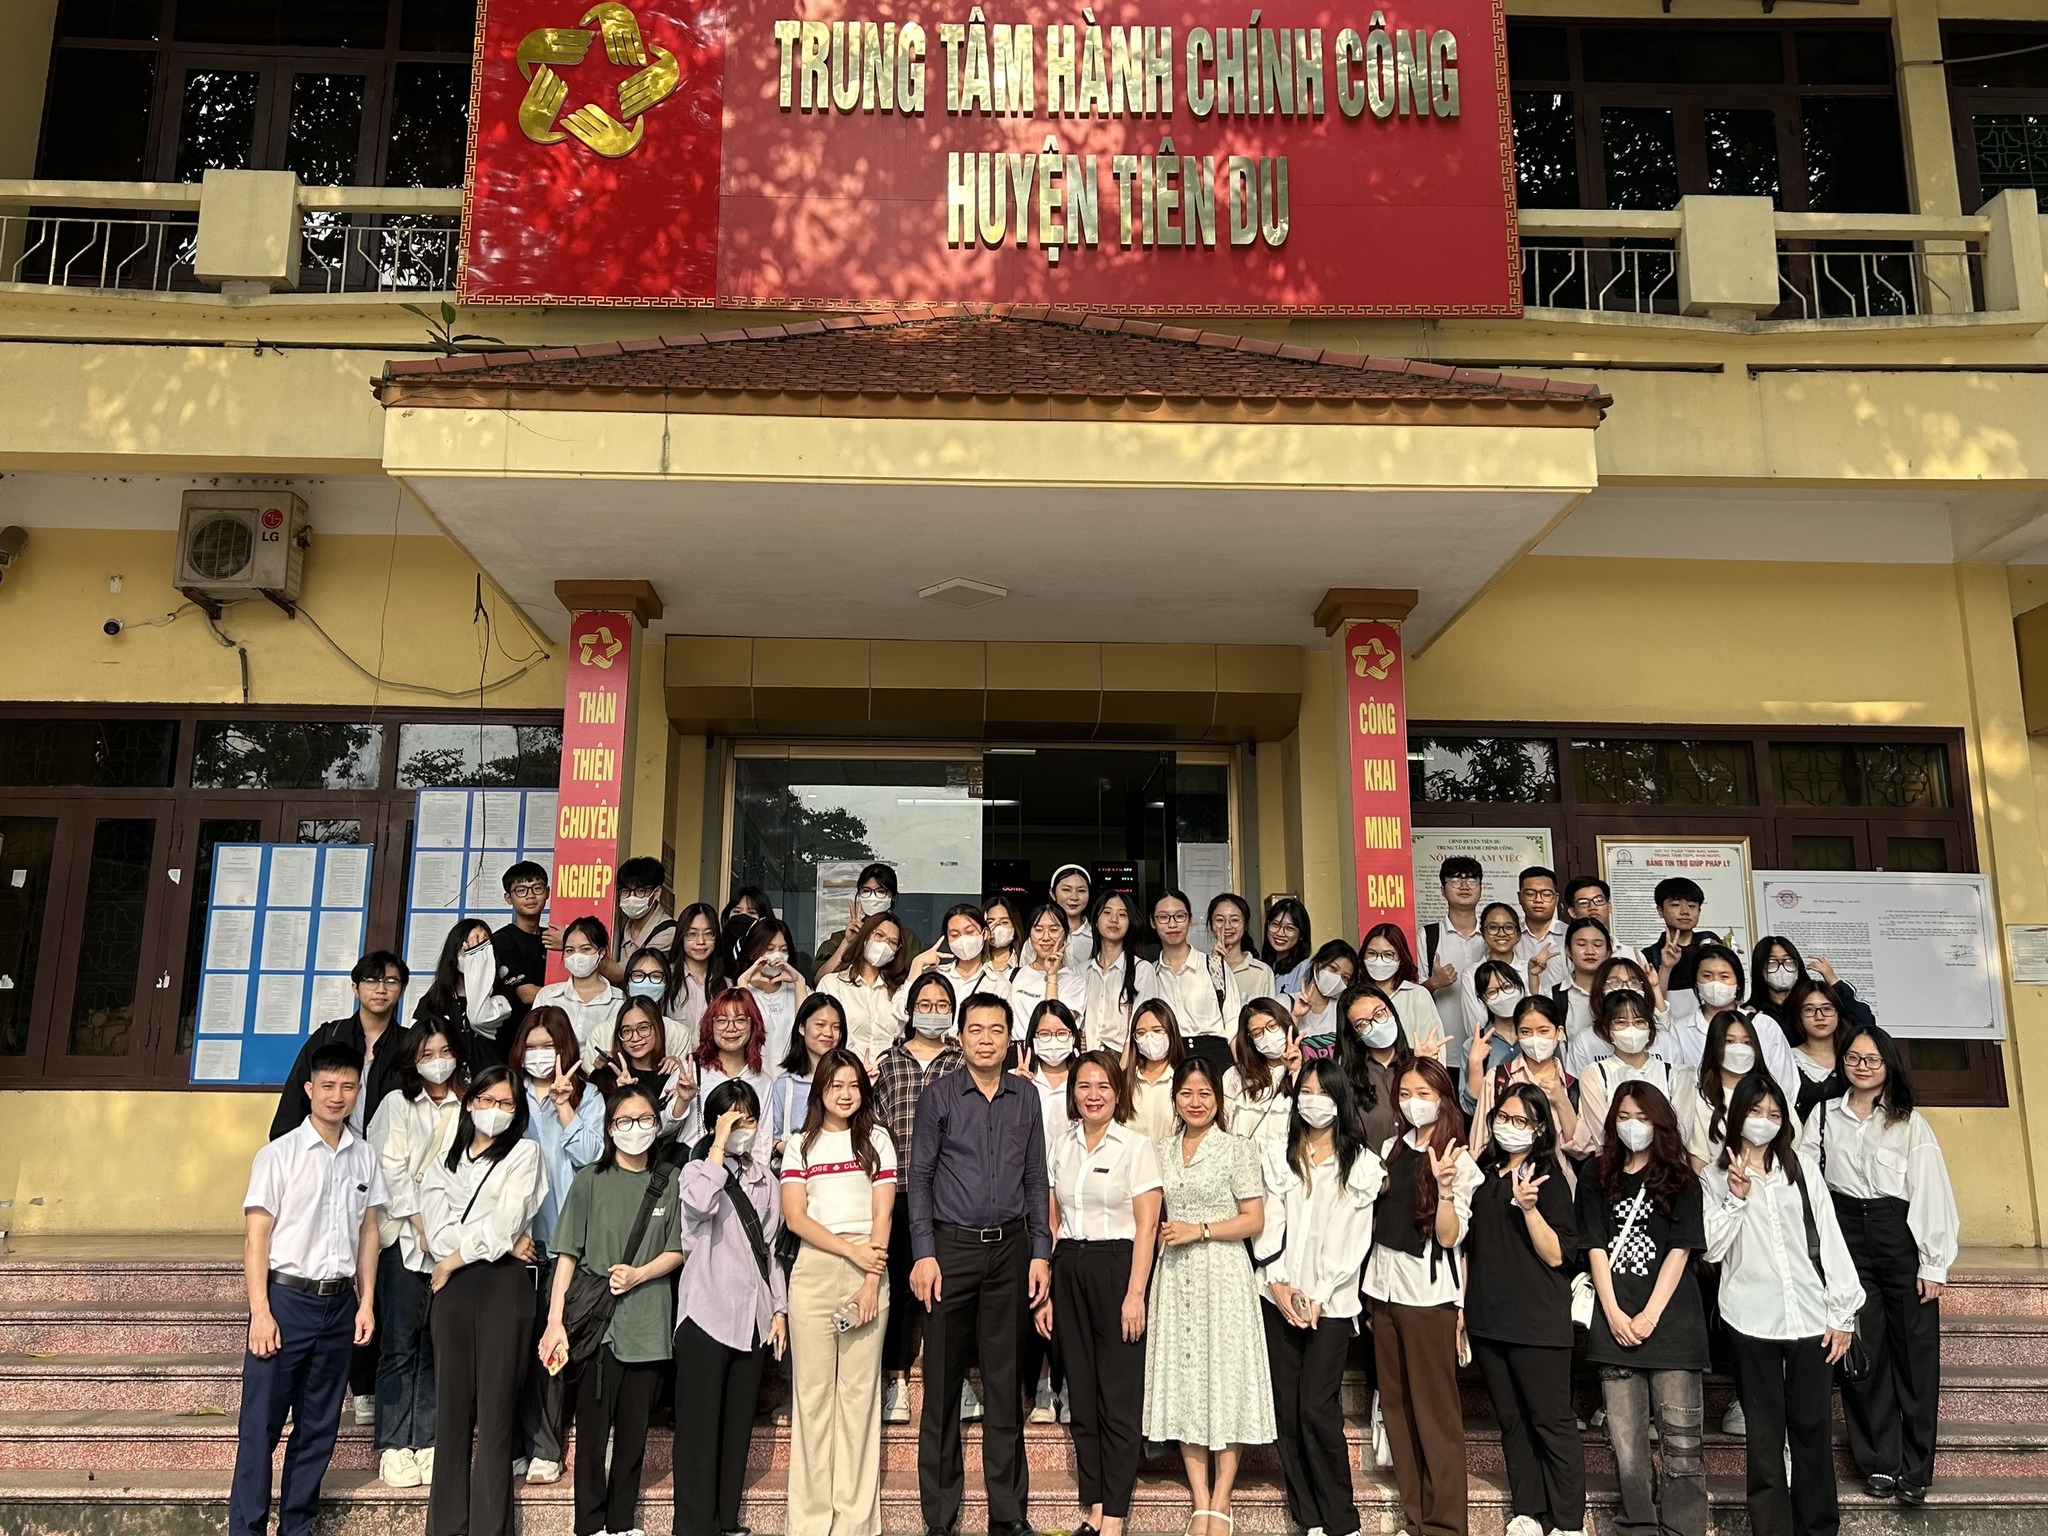 Hoạt động thực tế học phần của sinh viên Khoa học quản lý về văn hóa tổ chức tại Trung tâm hành chính công, huyện Tiên Du, tỉnh Bắc Ninh 